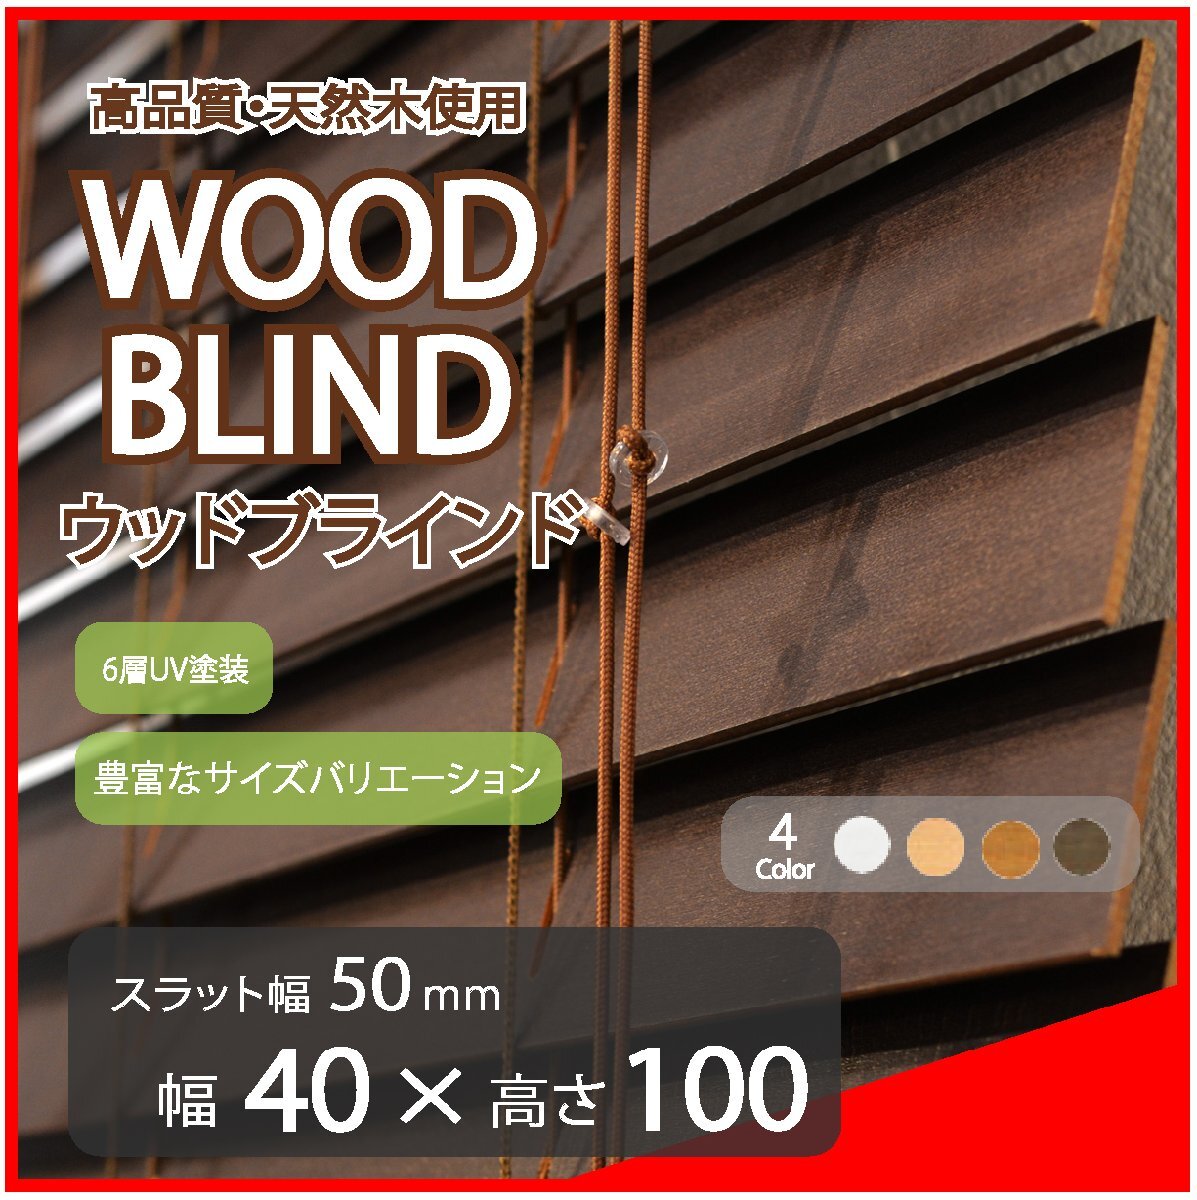 高品質 ウッドブラインド 木製 ブラインド 既成サイズ スラット(羽根)幅50mm 幅40cm×高さ100cm ダーク_画像1